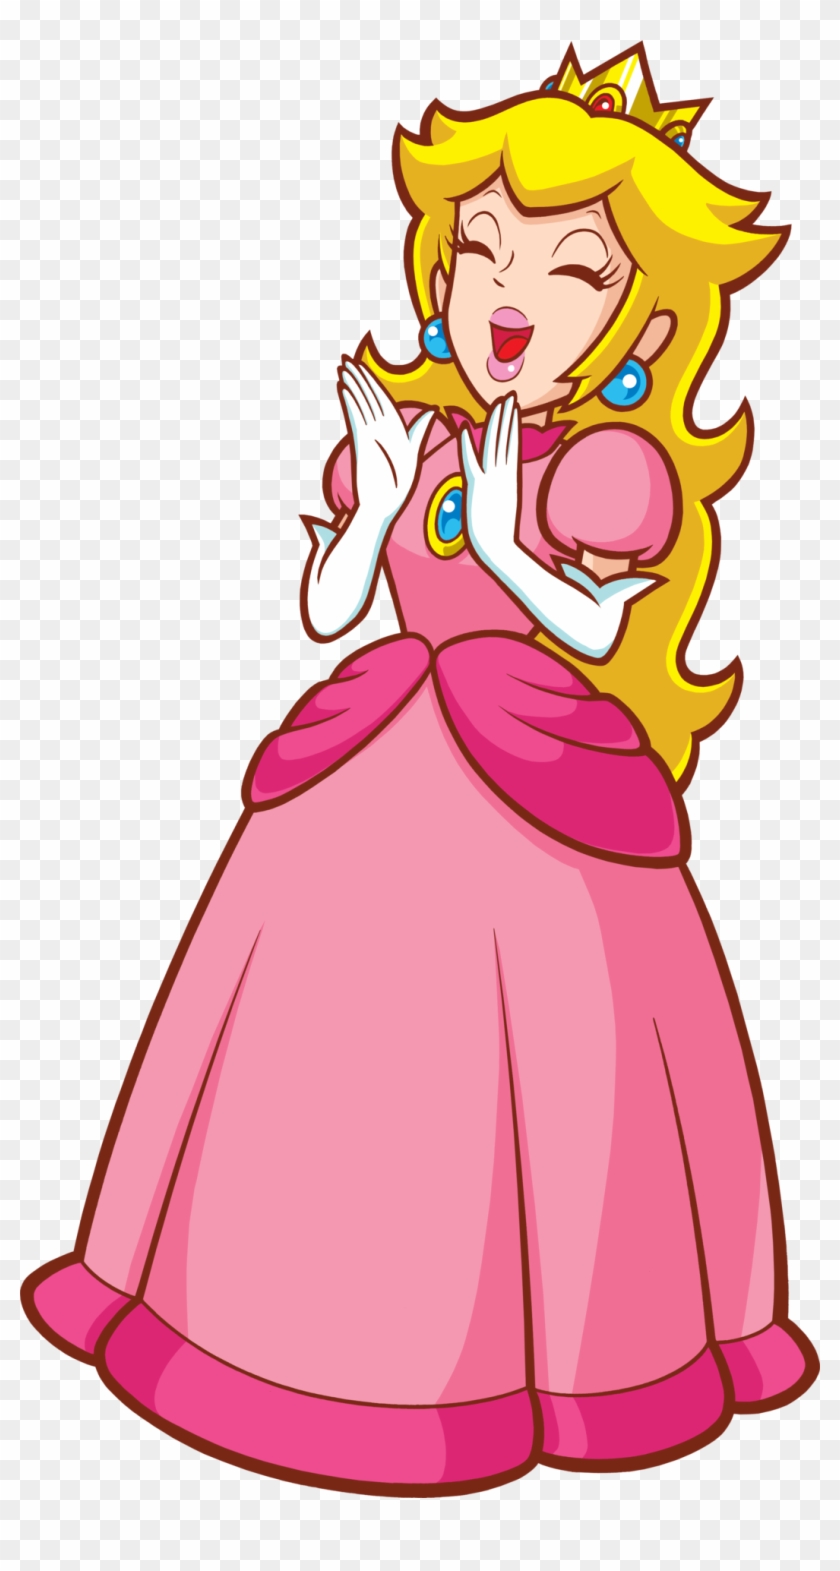 Super Princess Peach - Super Princess Peach #1539173